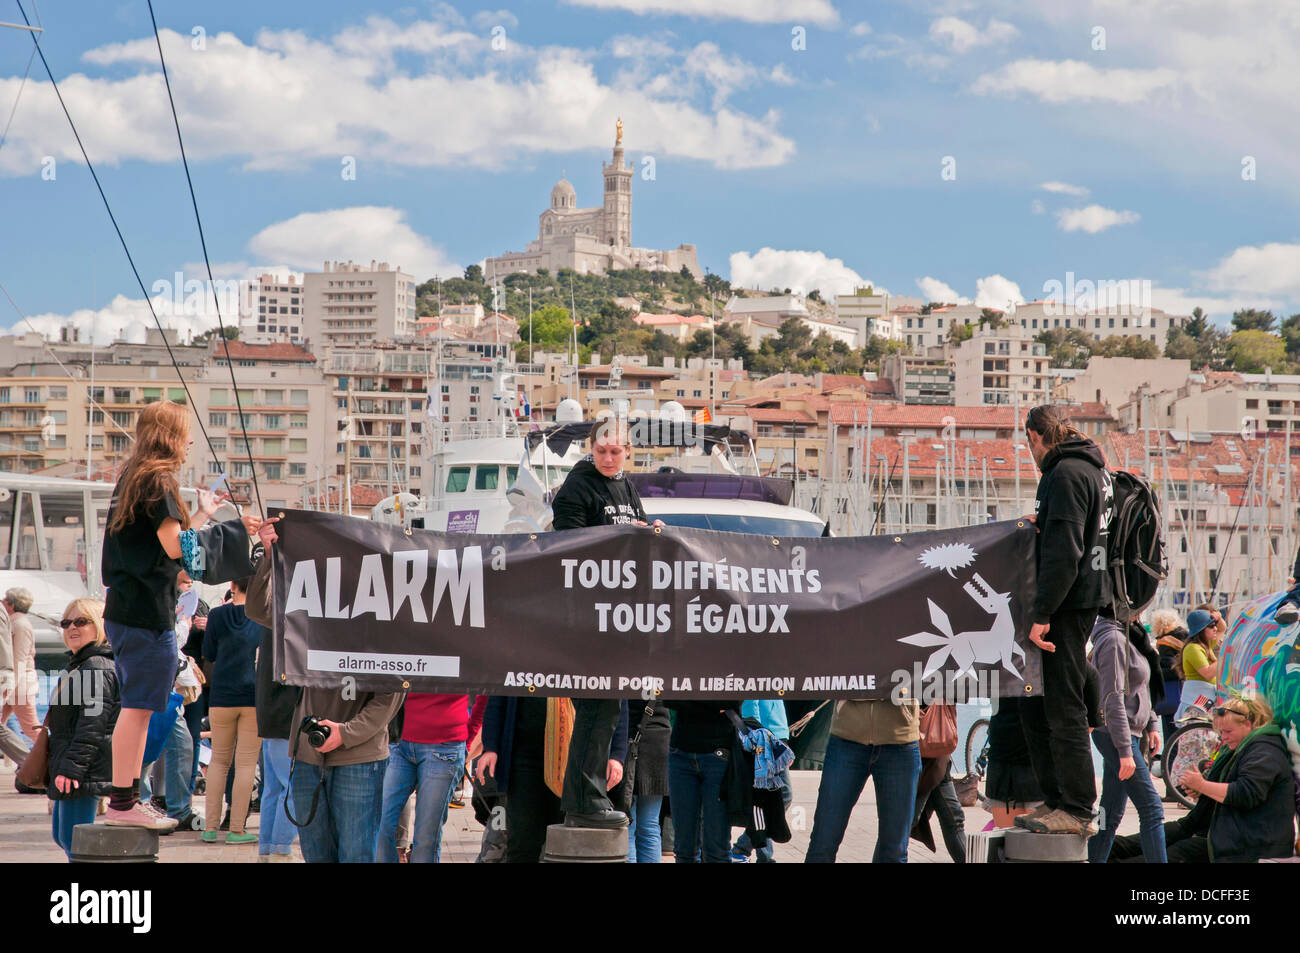 De jeunes manifestants ont déployé des banderoles à Vieux Port, Marseille, France. Banque D'Images